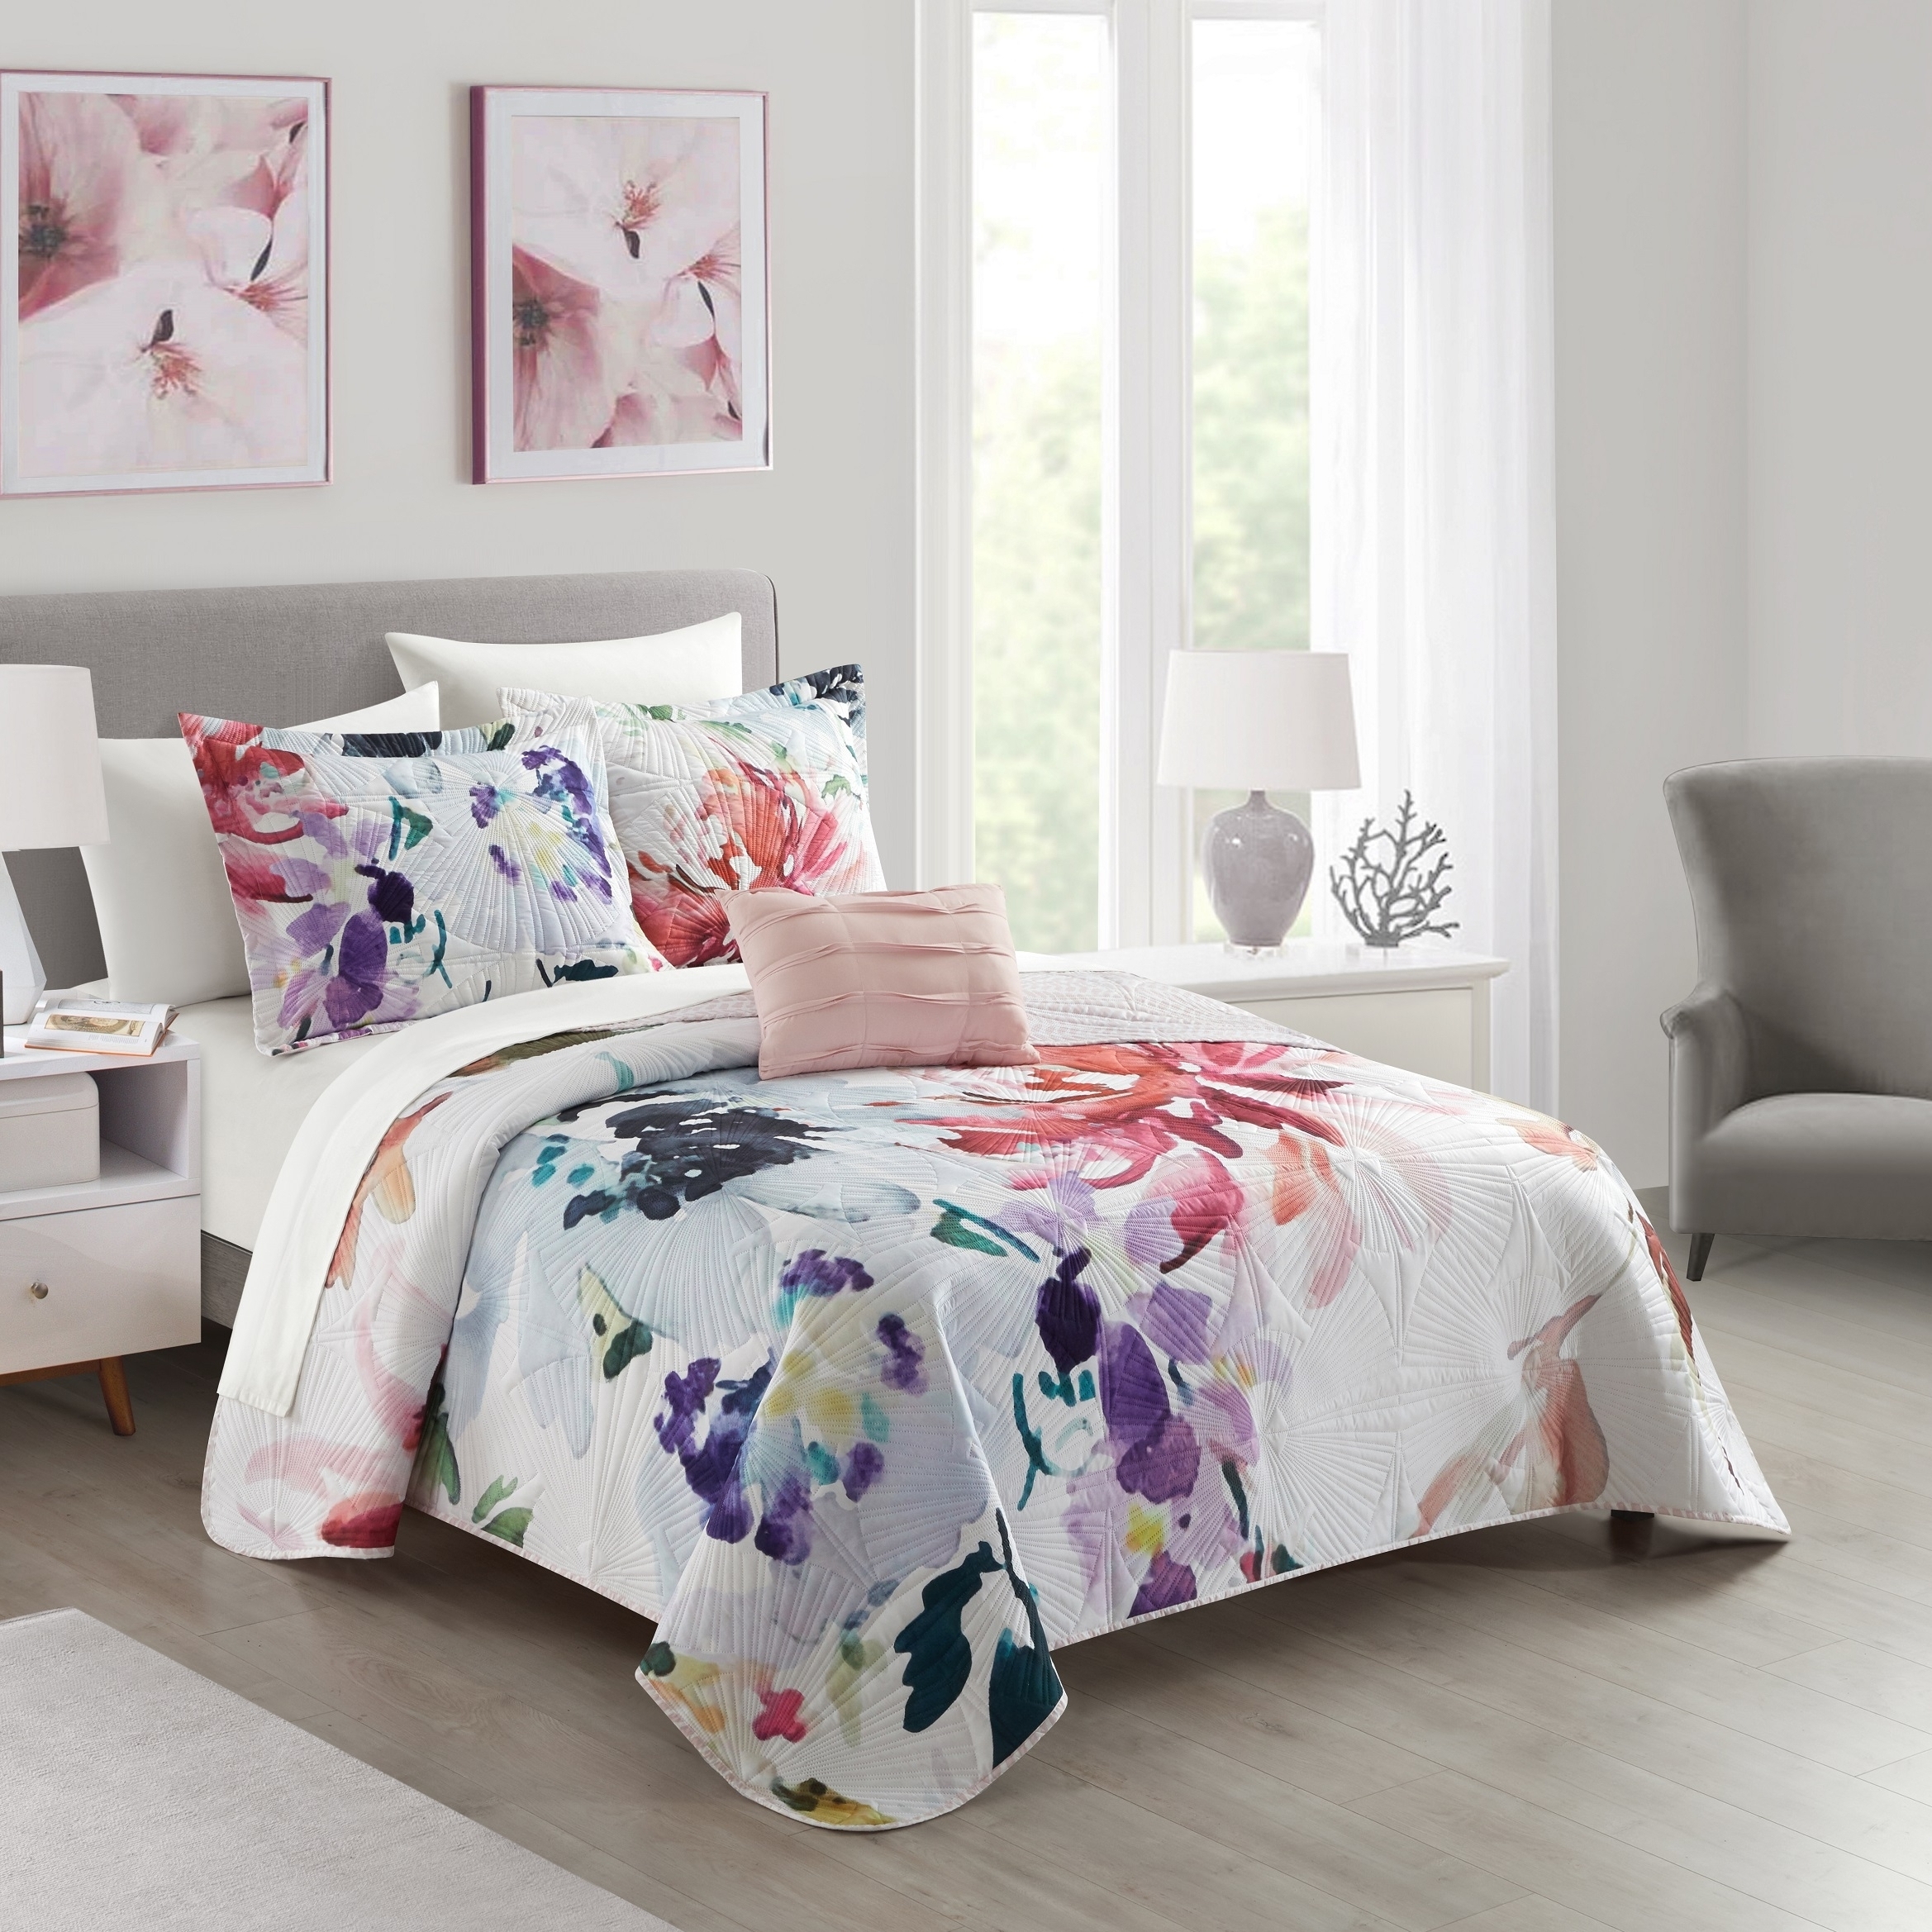 Ateus Palace 3 Or 4Piece Reversible Quilt Set Floral Watercolor Design Bedding - Mateus Purple, Twin (3 Piece)